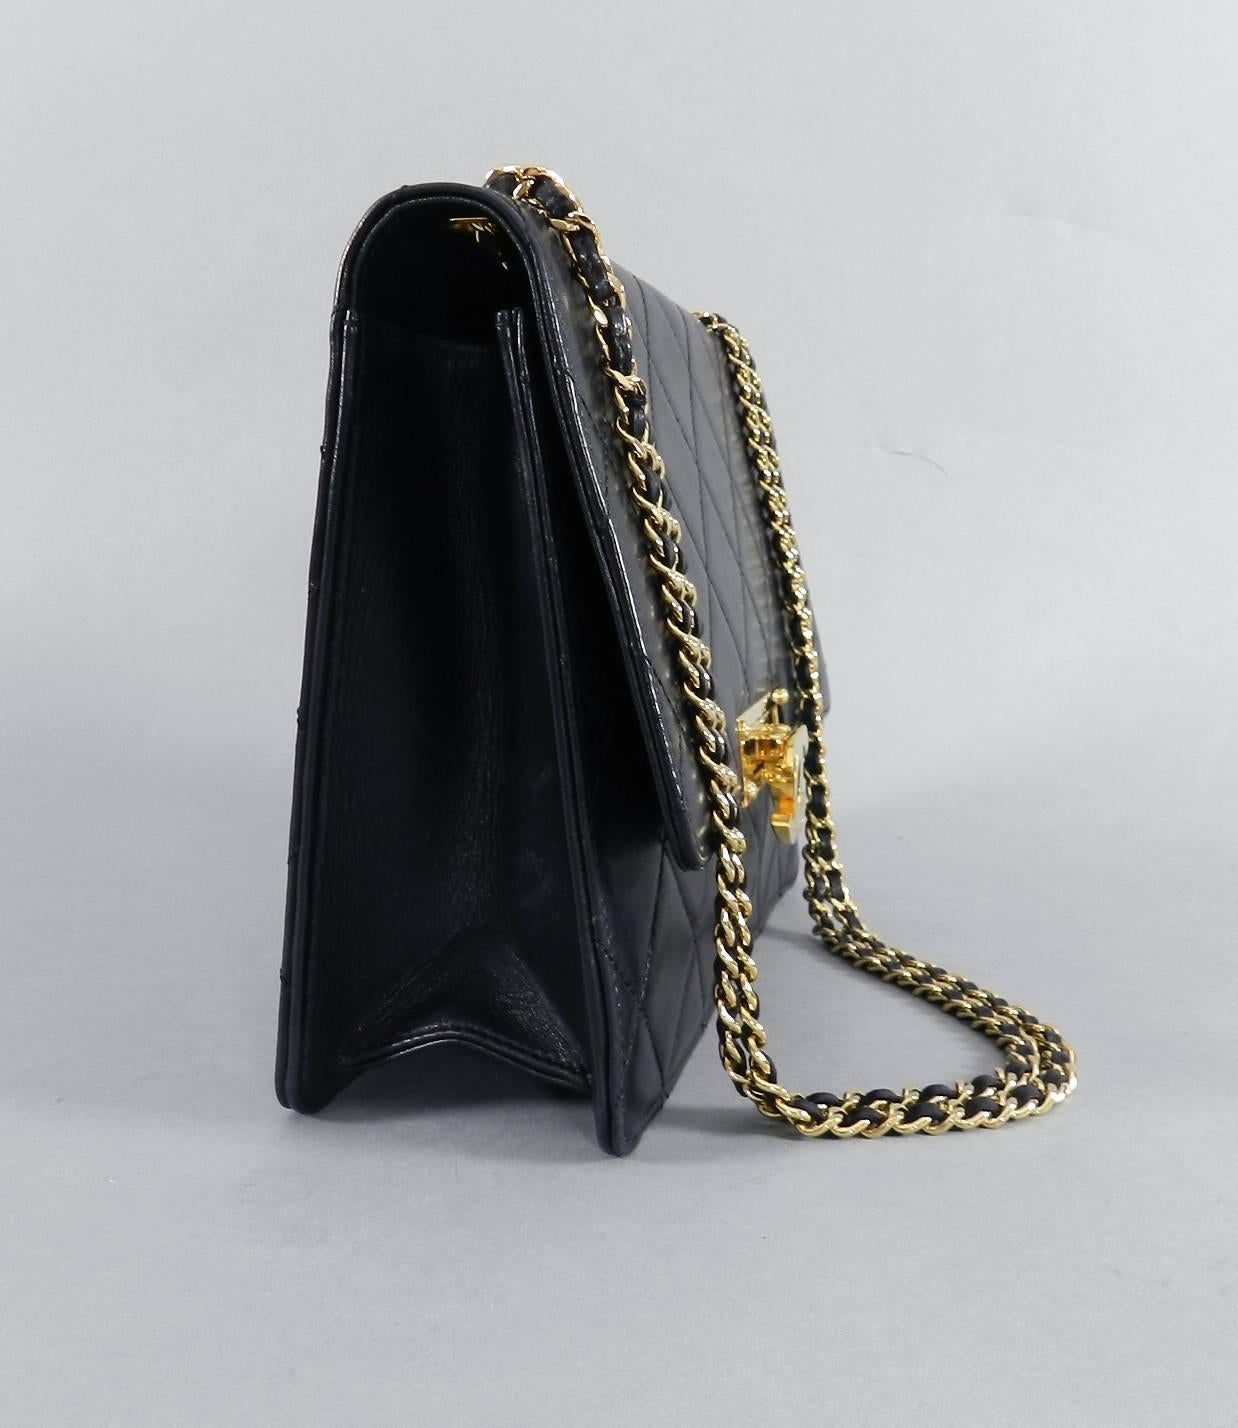 Women's Chanel Cruise 2014 Black Lambskin Quilted Golden Class Medium Flap Bag